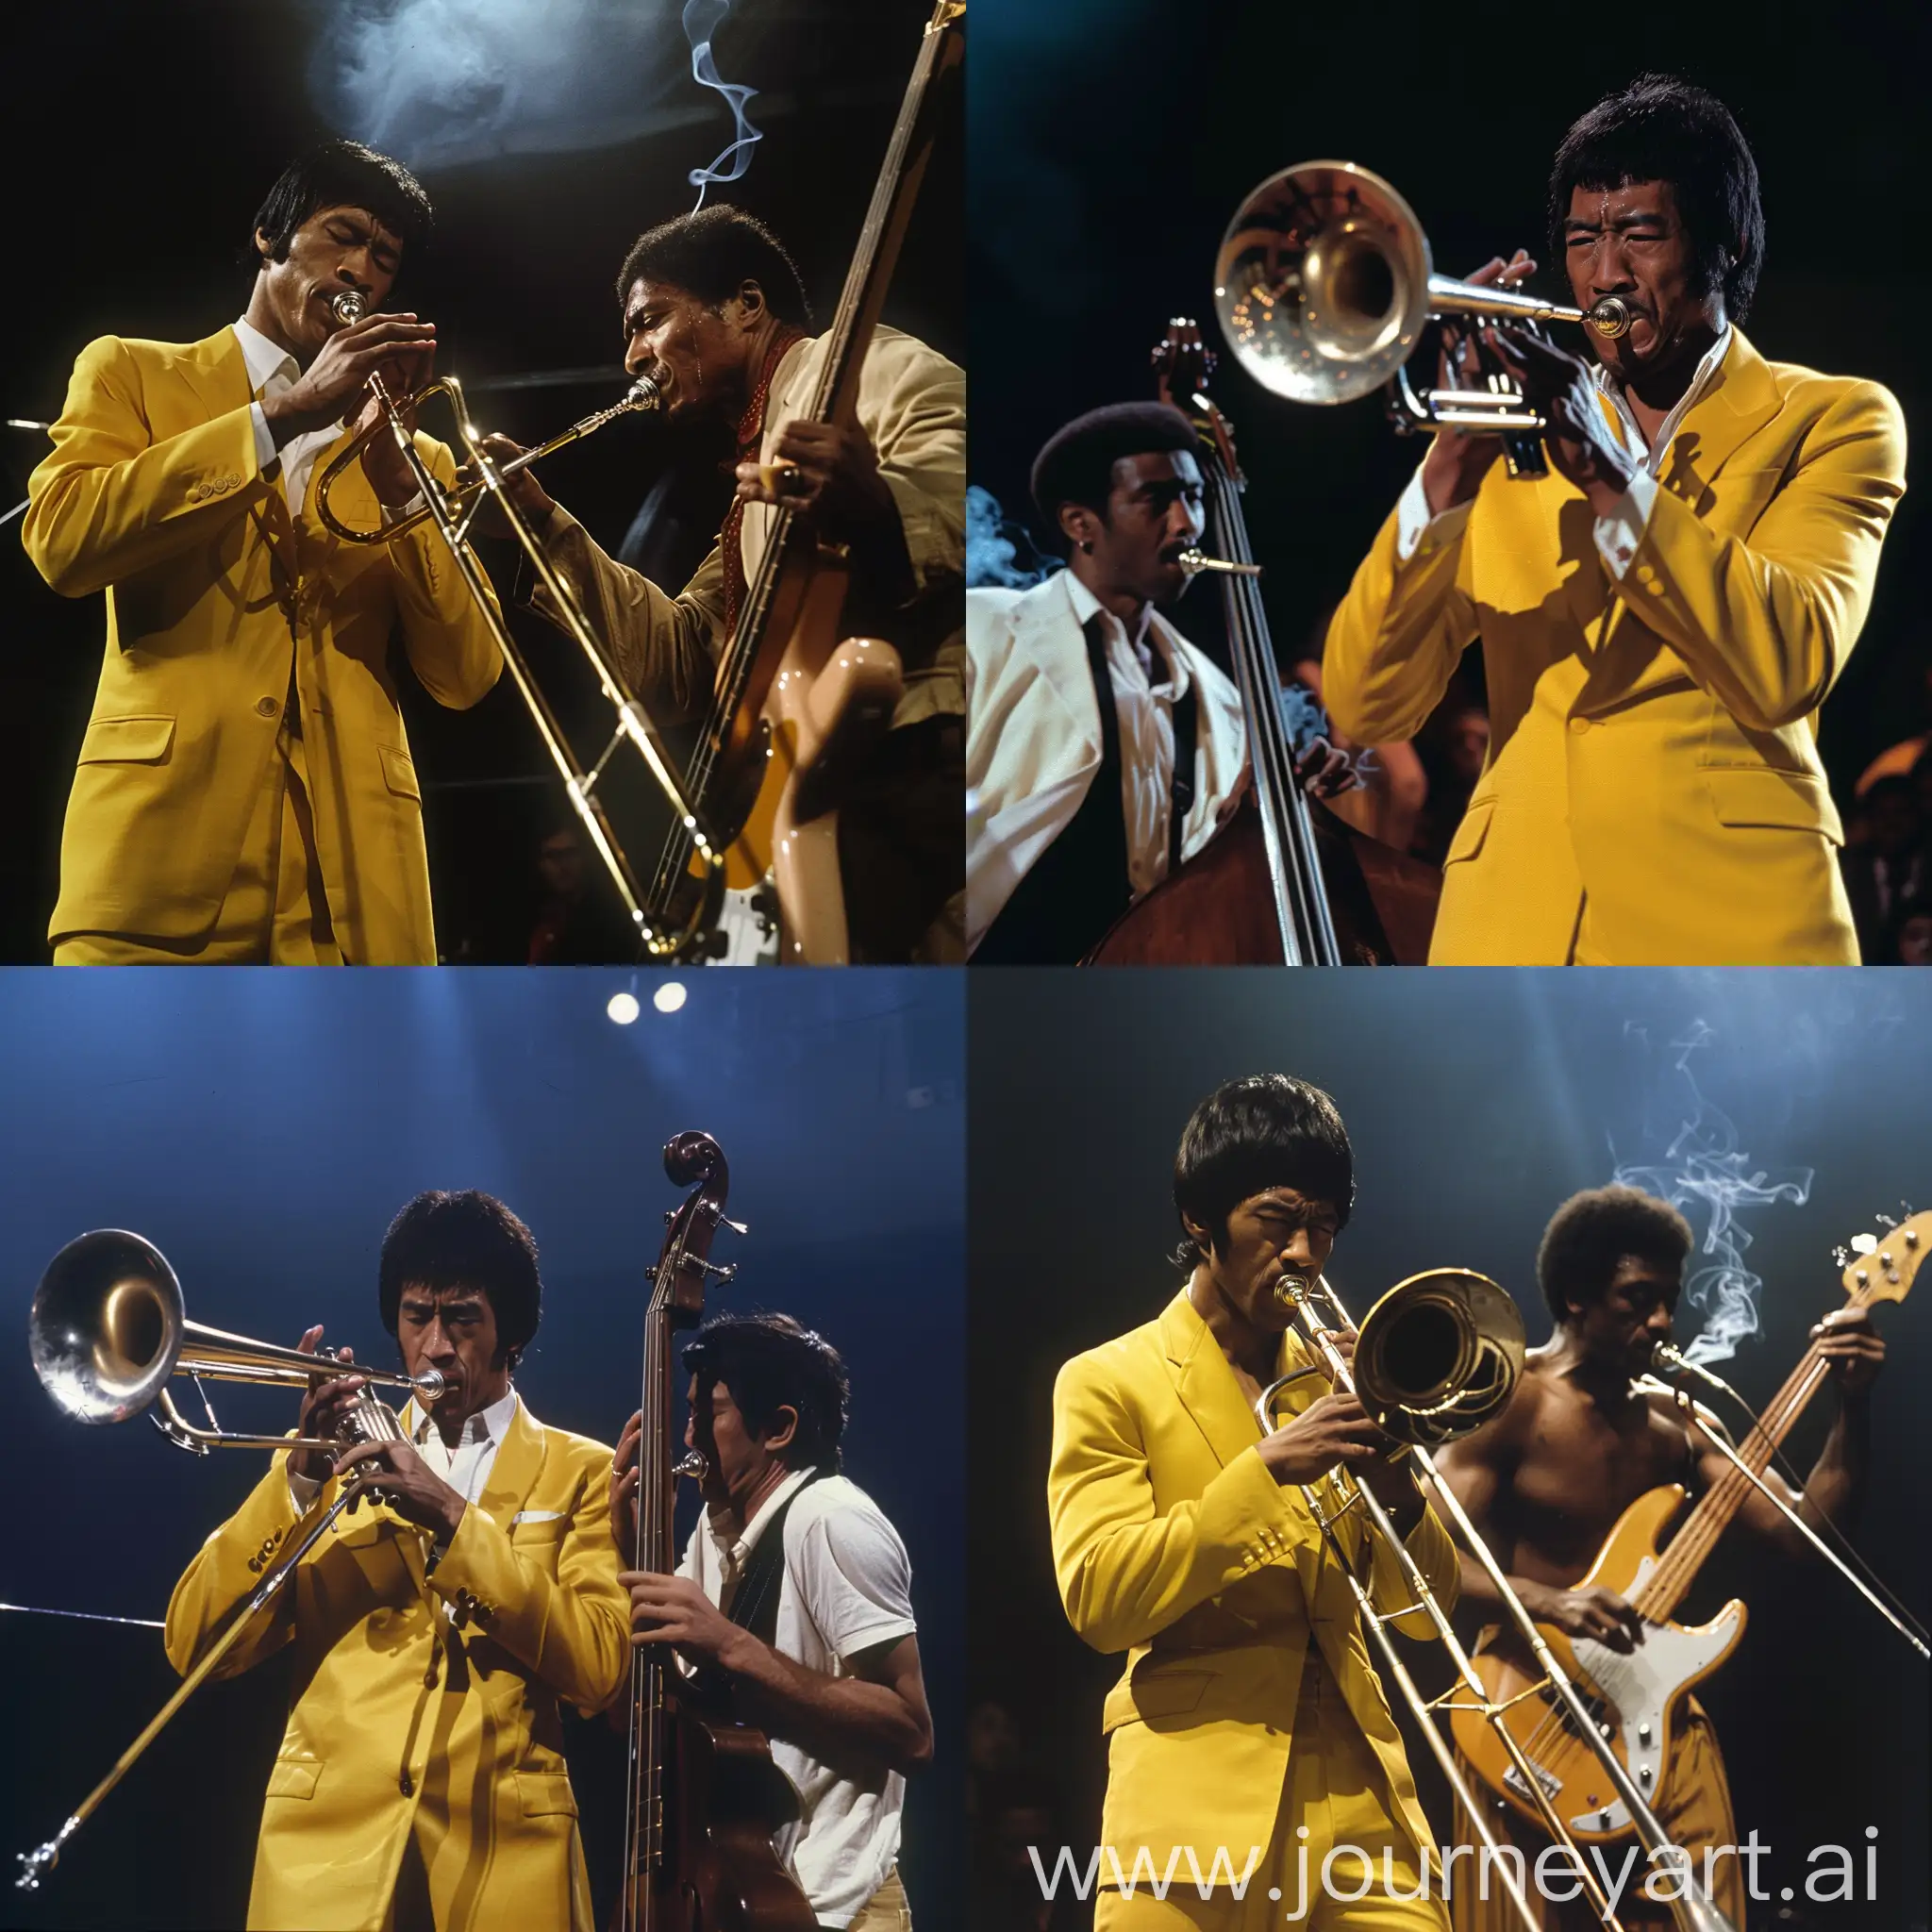 Bruce-Lee-Playing-Trombone-in-Yellow-Suit-Karen-AbdulJabbar-Playing-Bass-in-a-Smoking